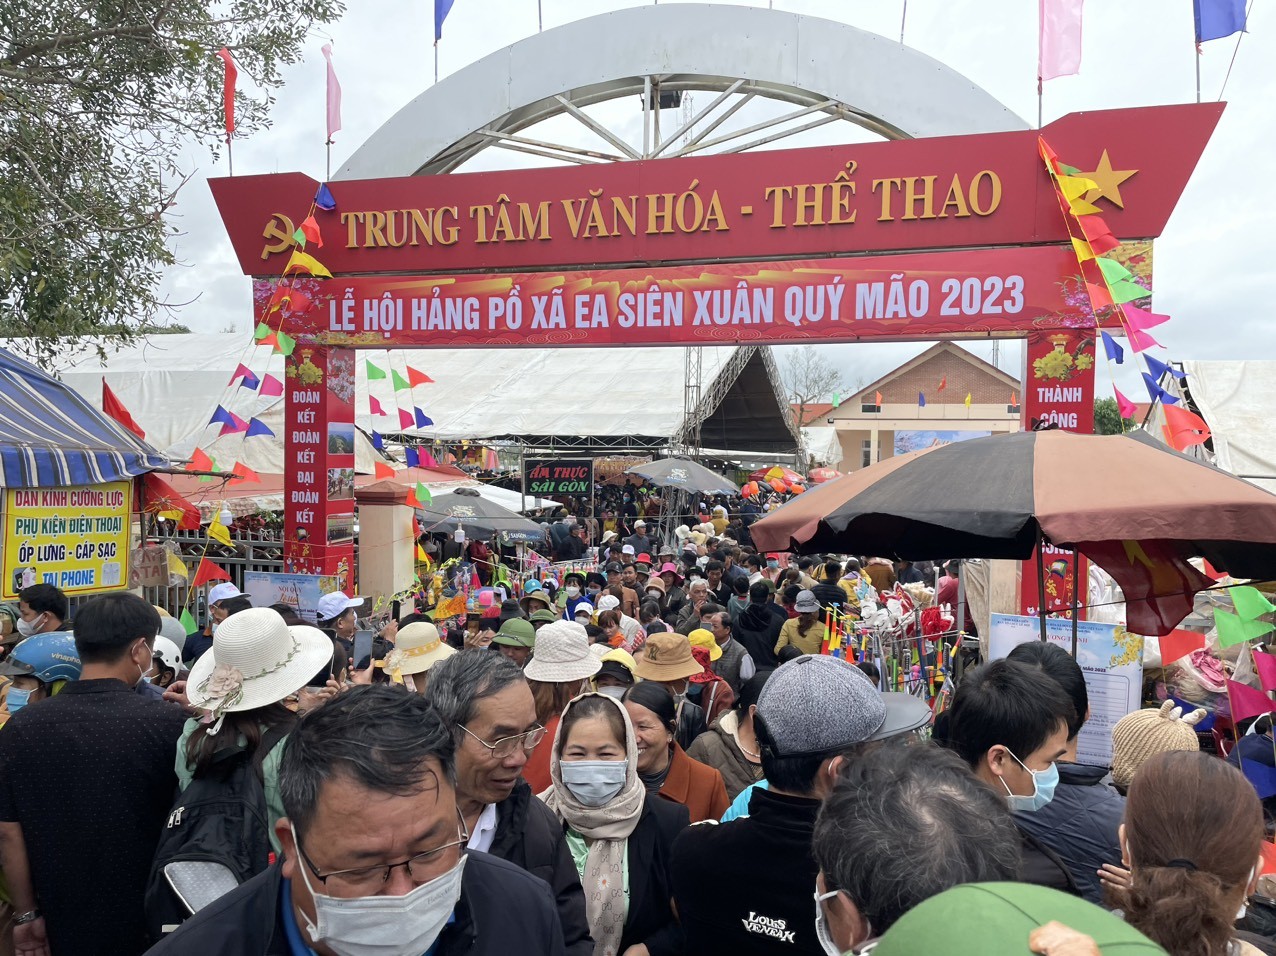 Đắk Lắk: Sau 3 năm gián đoạn do dịchCOVID-19, Lễ hội Hảng Pồ thu hút hàng nghìn người tham dự